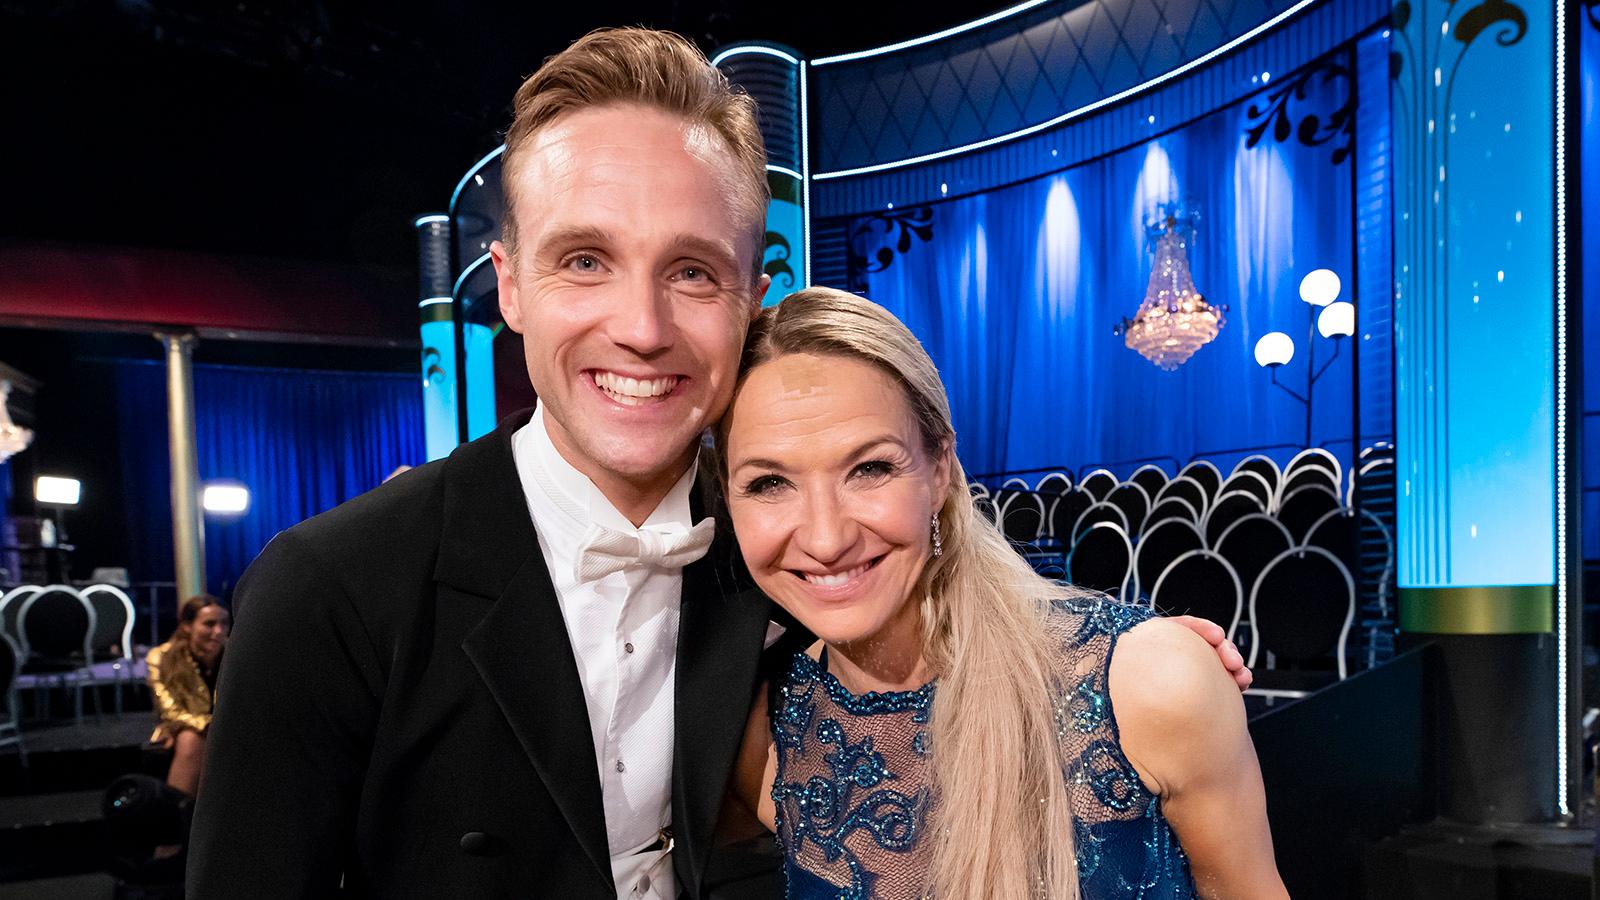 Kristin Kaspersen och Calle Sterner vann ”Let’s dance” 2019.